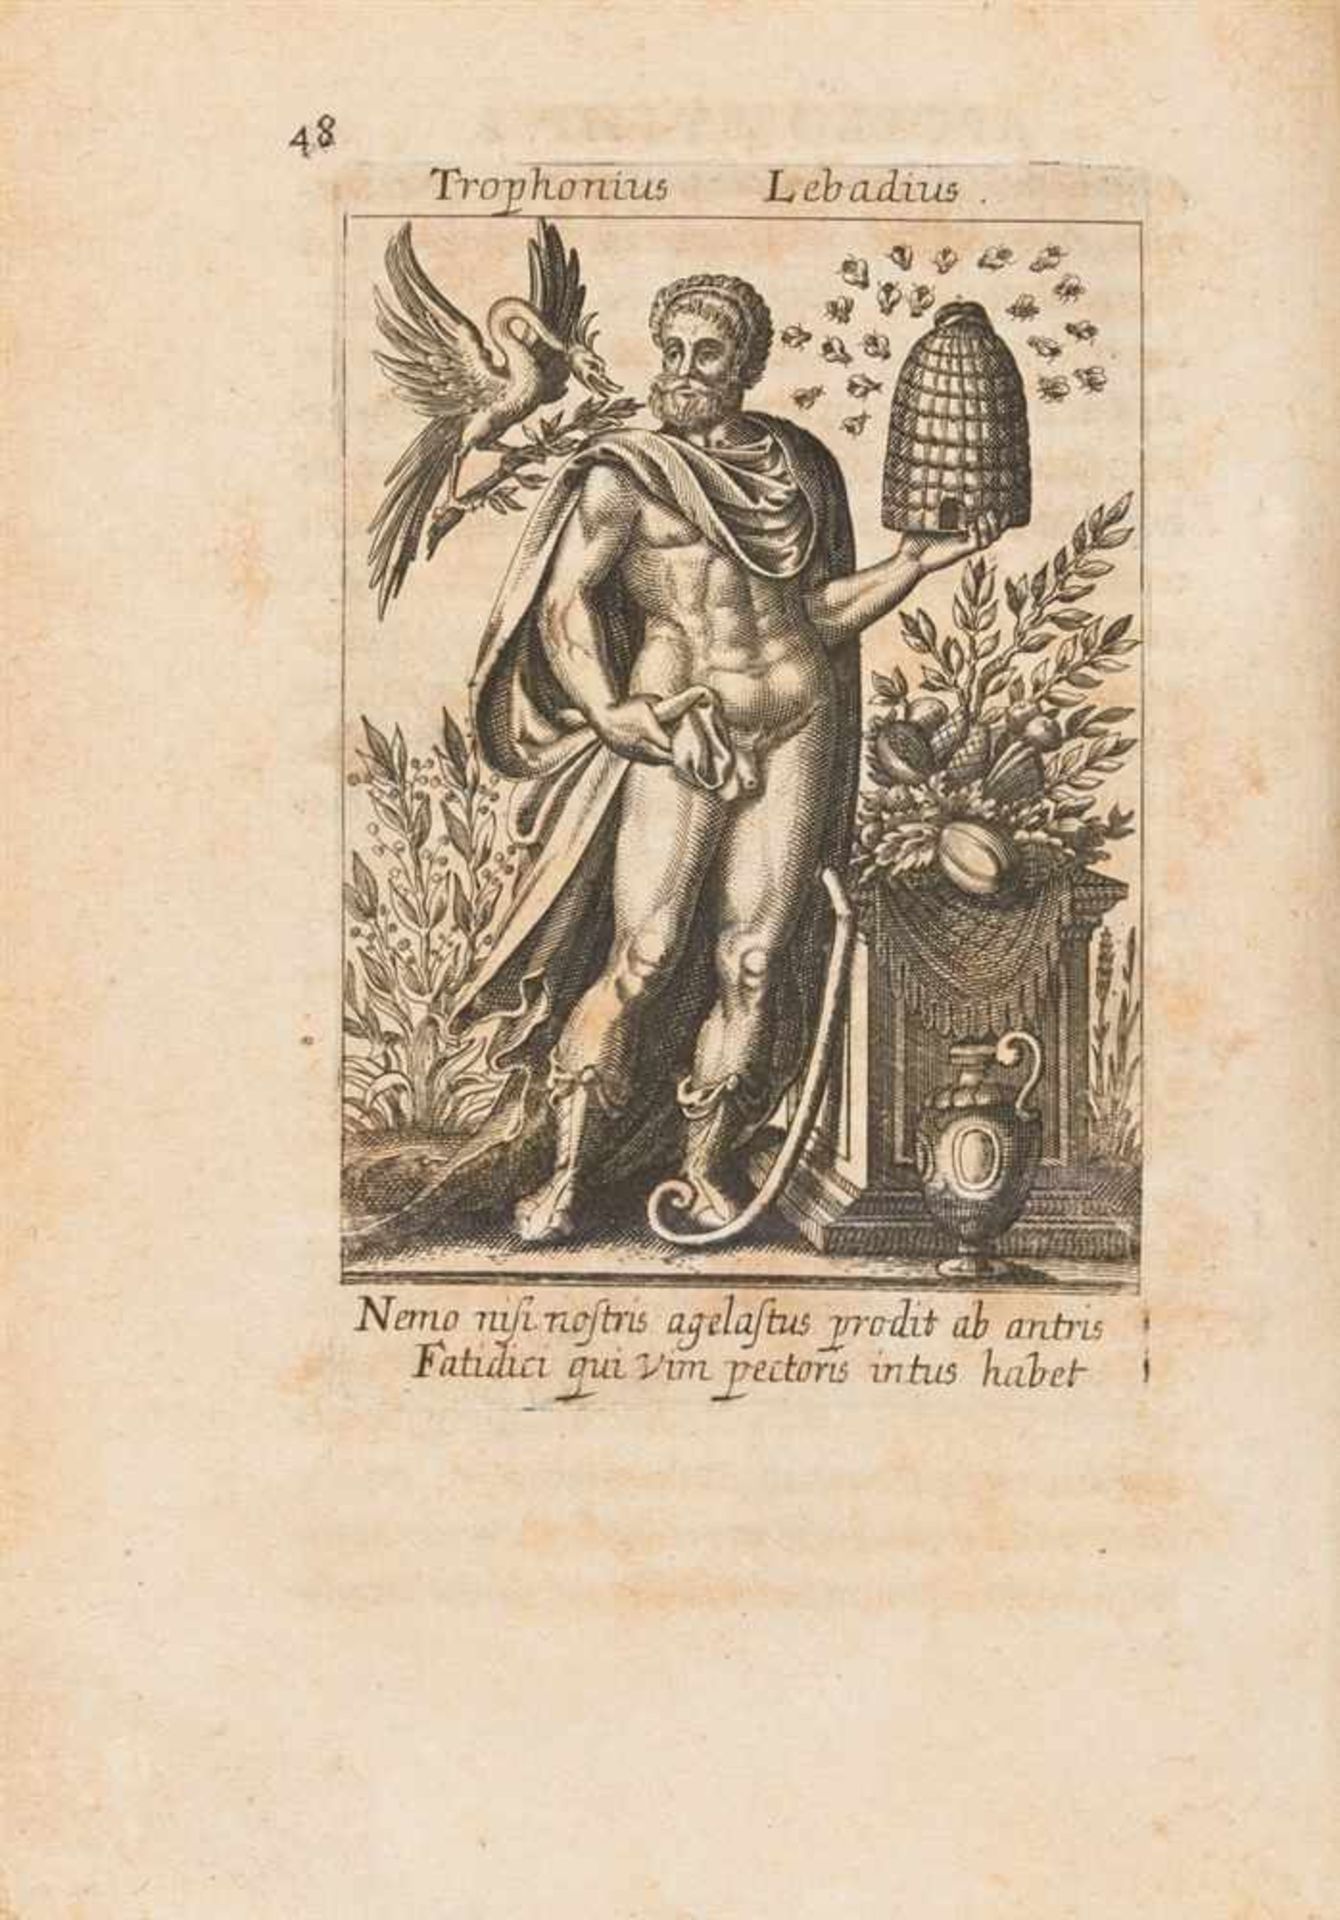 Mussard, Pierre: Historia deorum, fatidicorum, vatum, sibyllarum, phoebadum, apud priscos